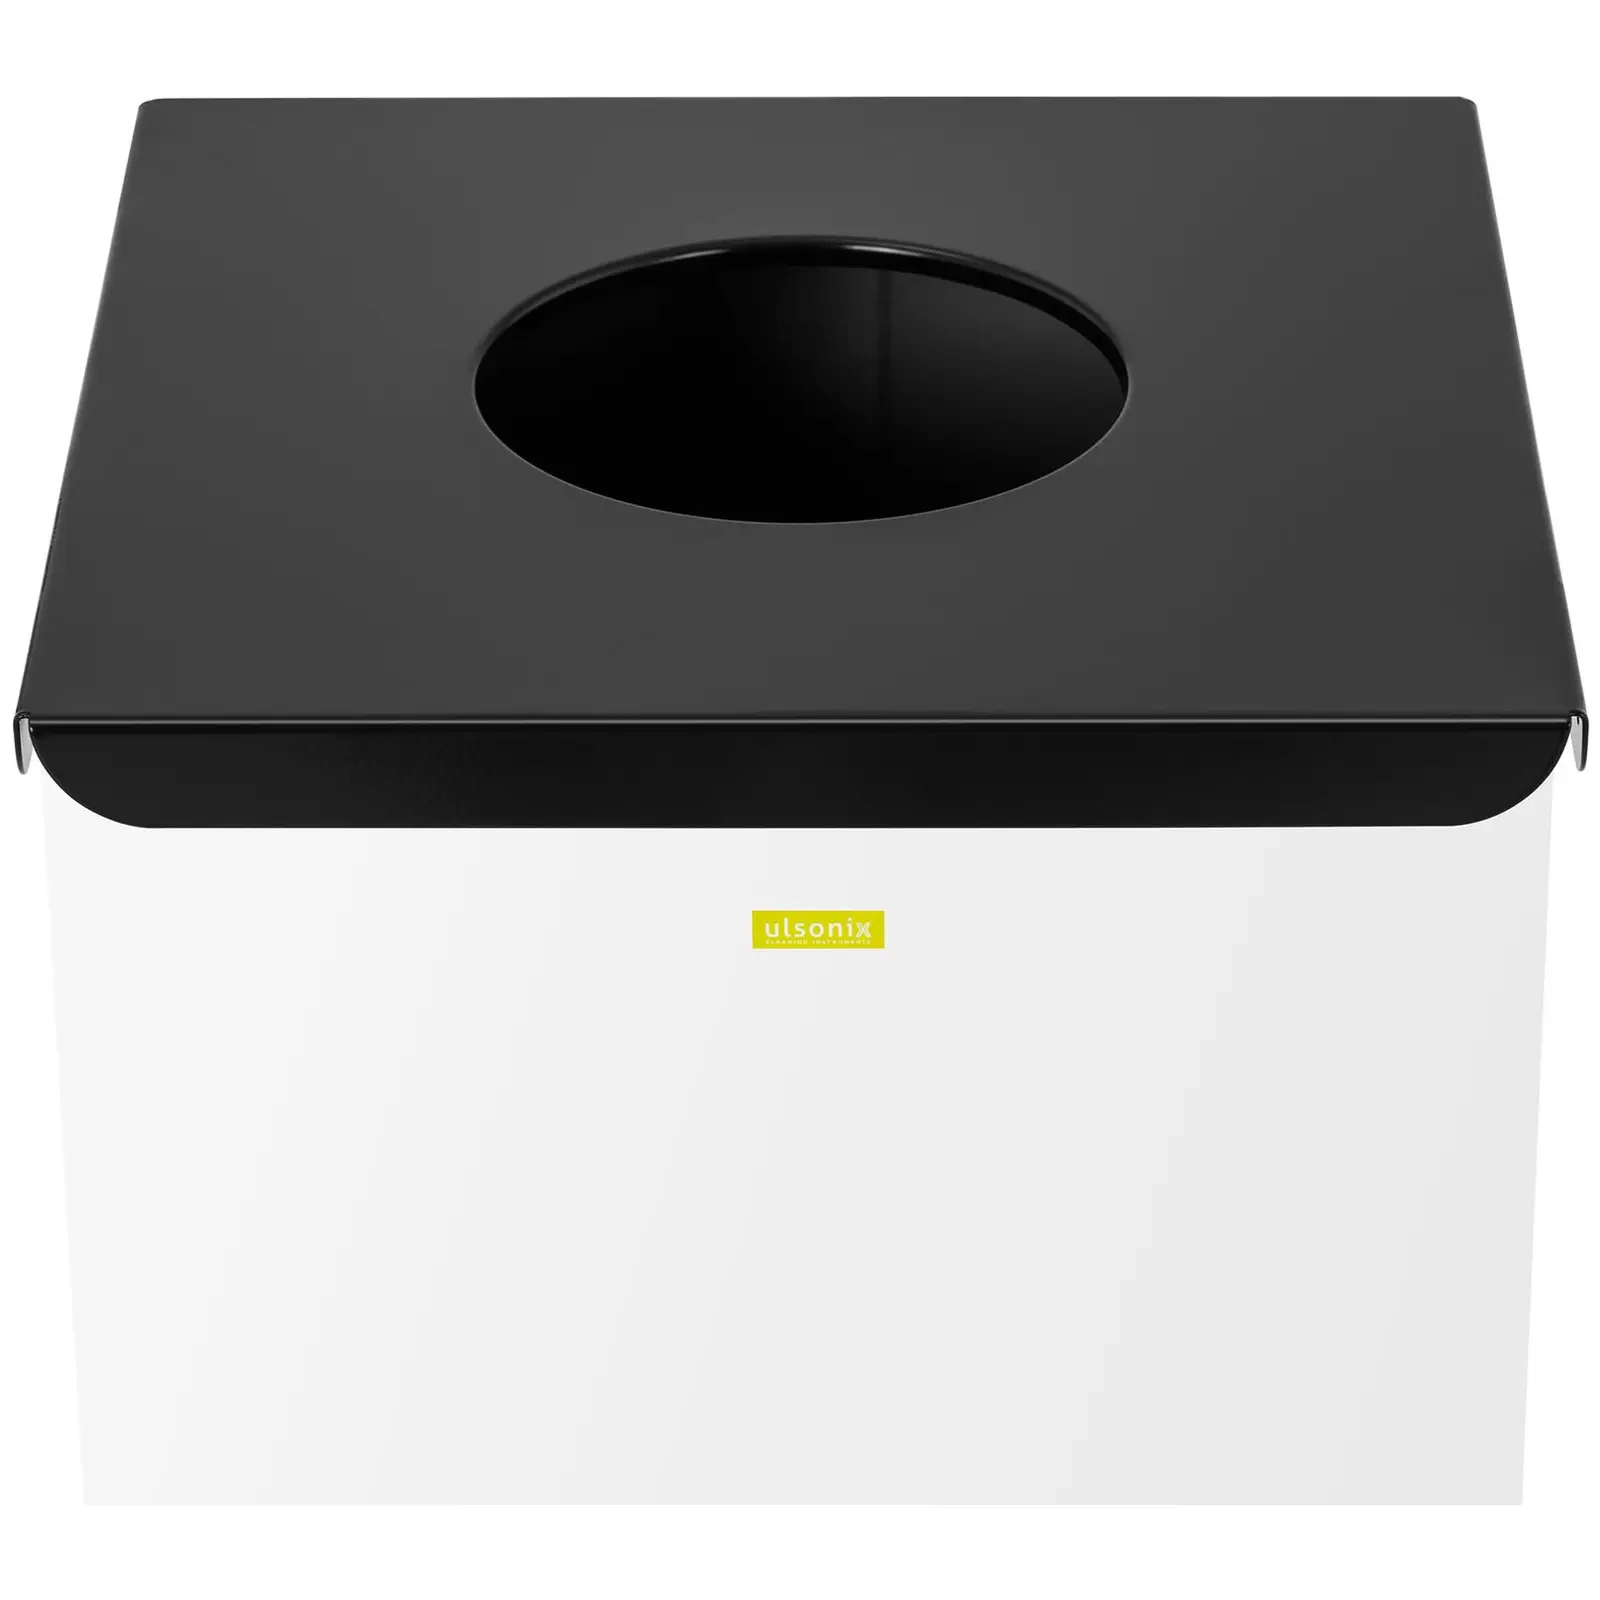 Cubo de basura - 60 L - blanco - etiquetado para otros residuos